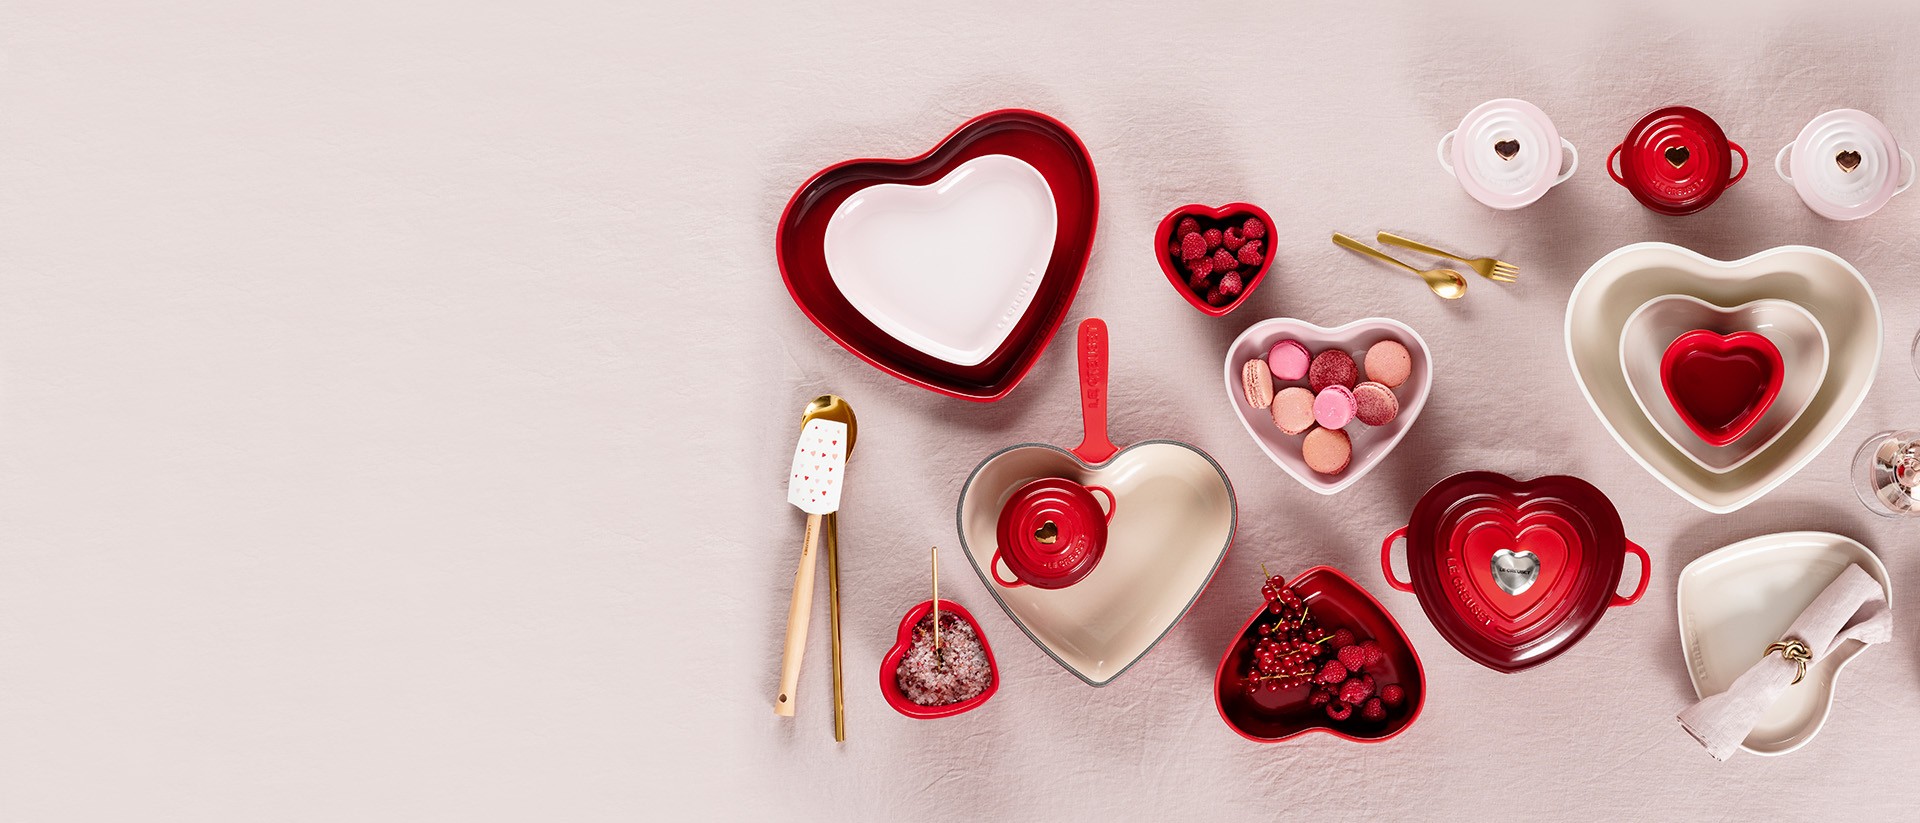 5 gourmandises romantiques à offrir pour la Saint-Valentin